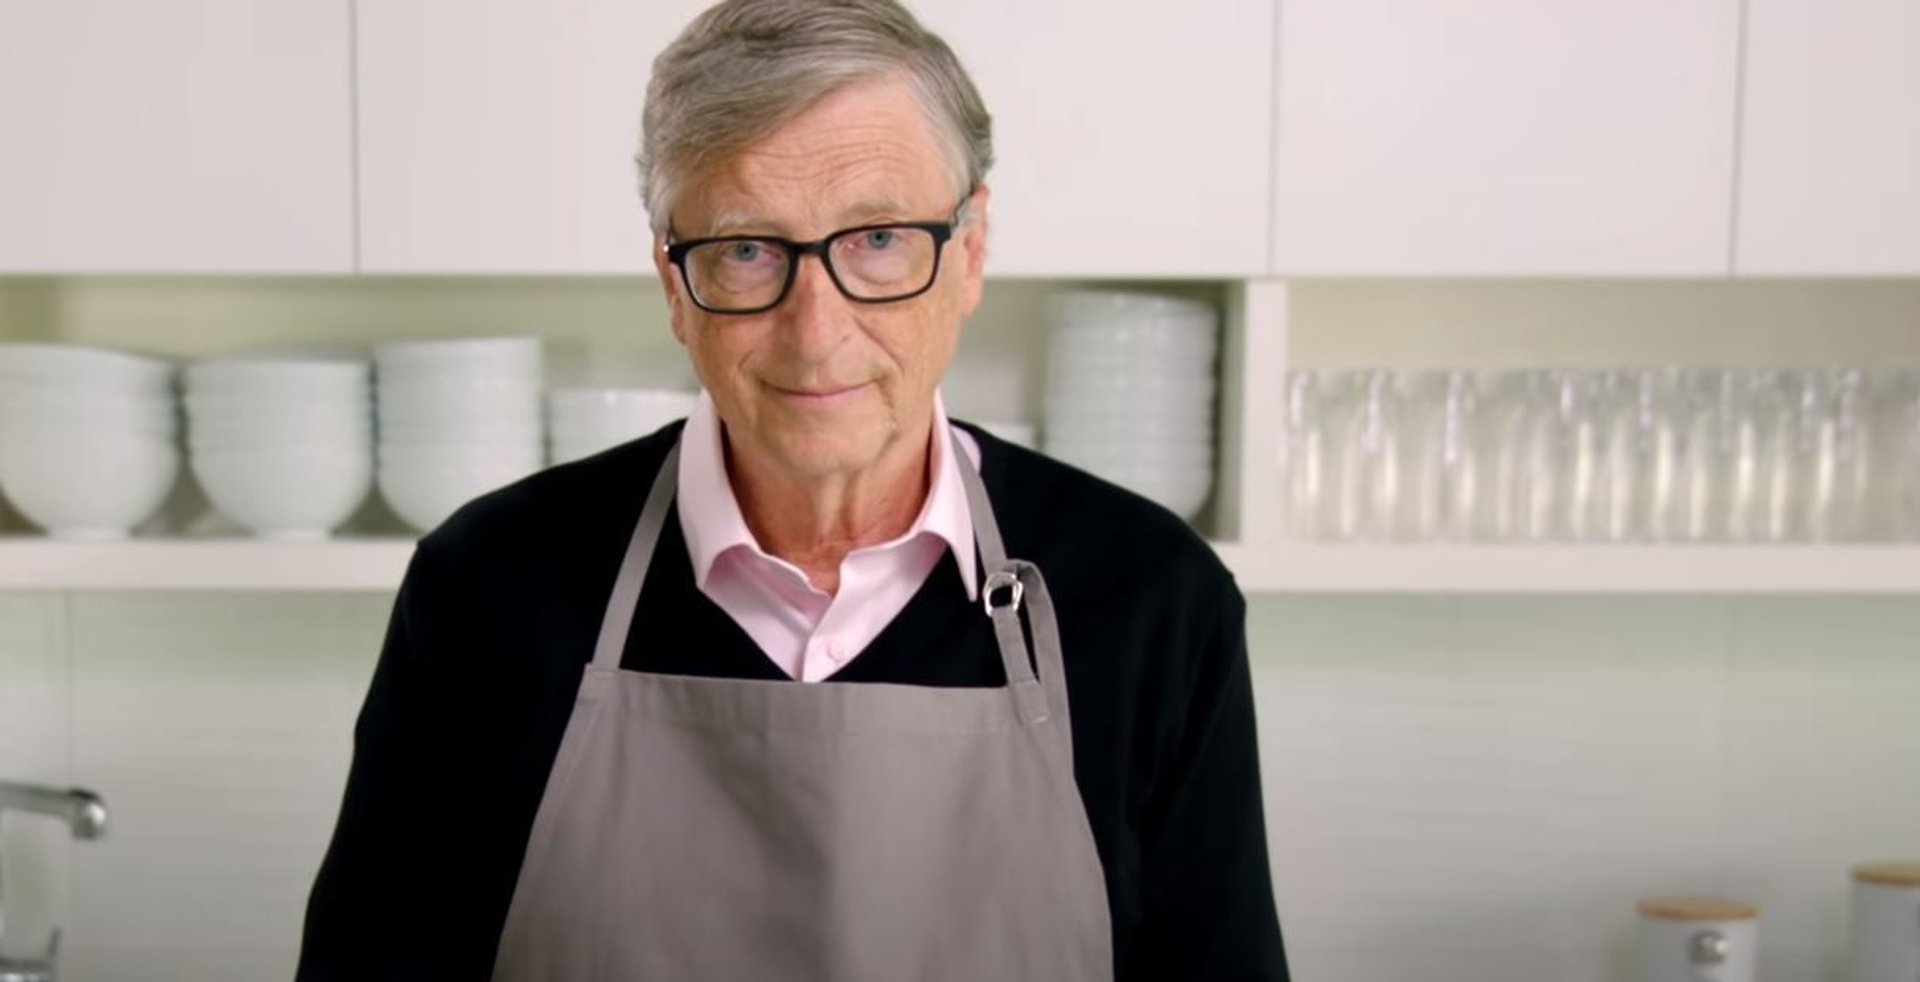 Bill Gates w fartuchu w kuchni.